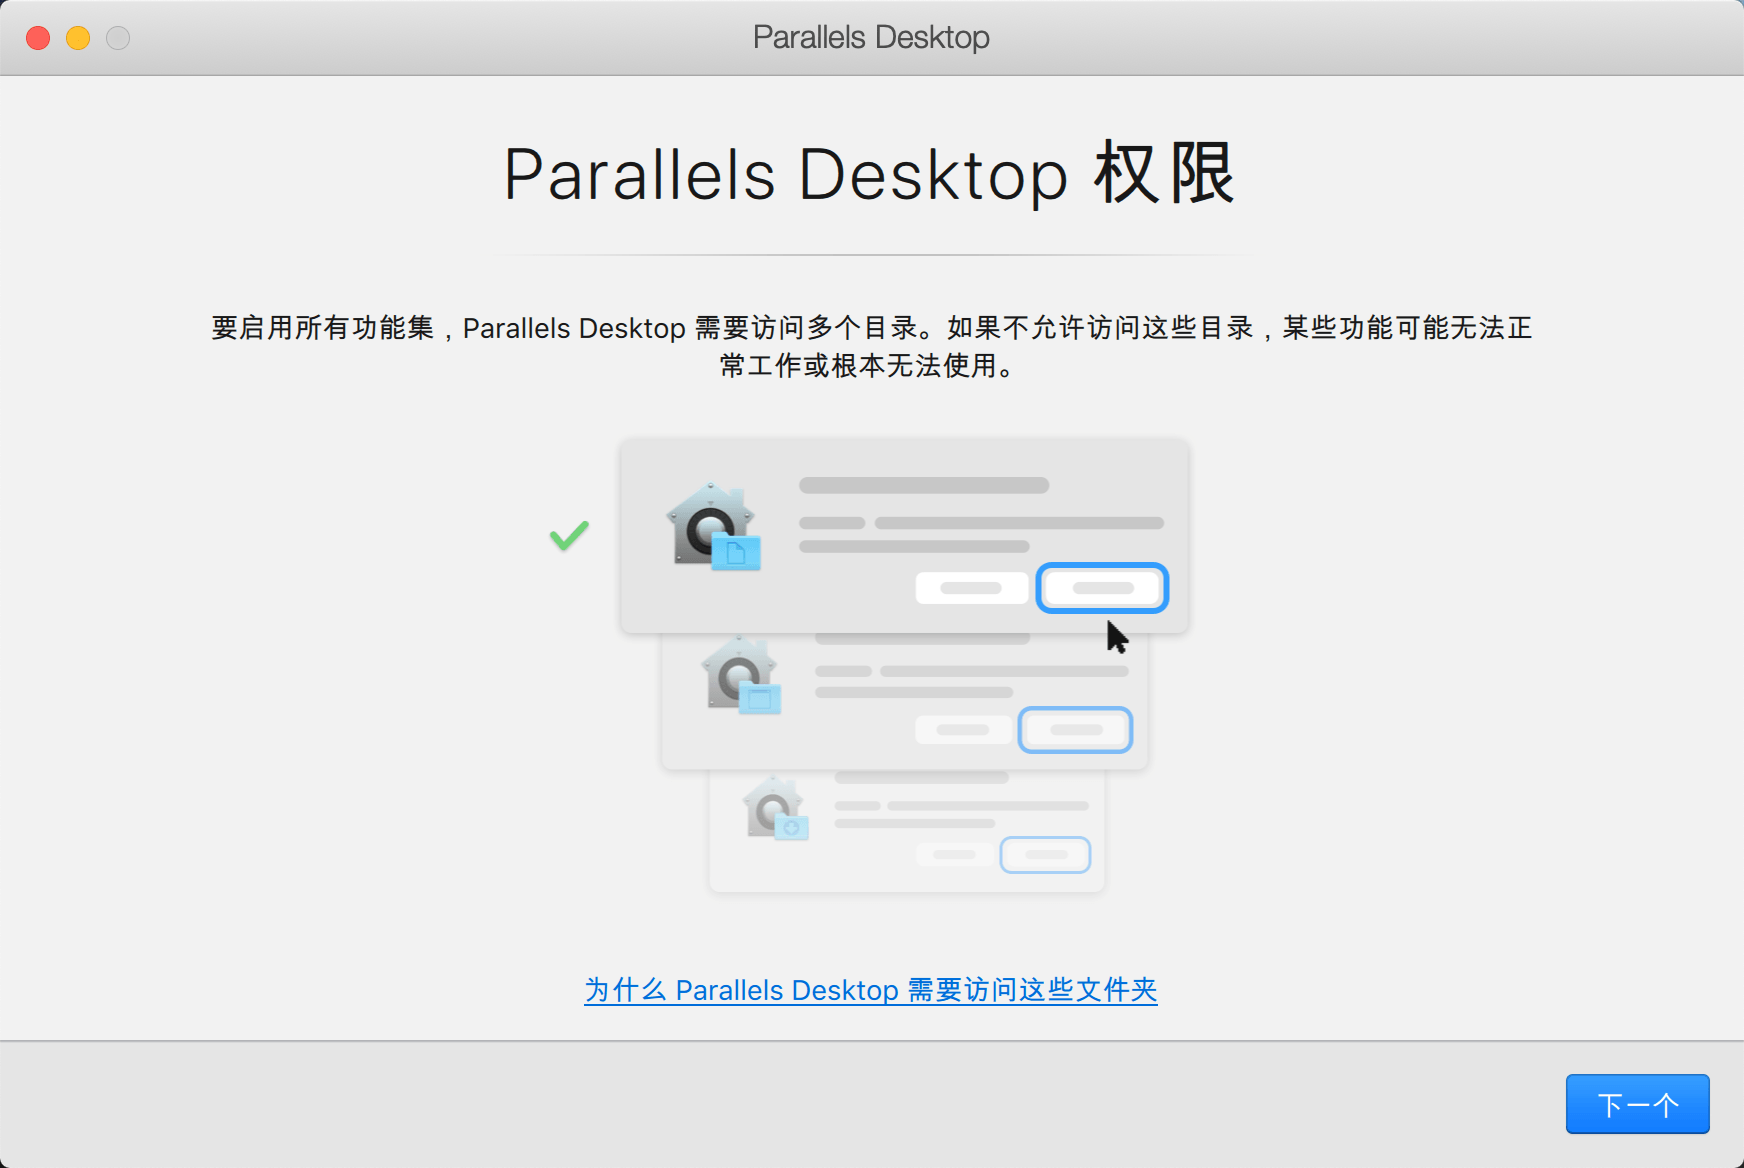 Parallels Desktop 16 